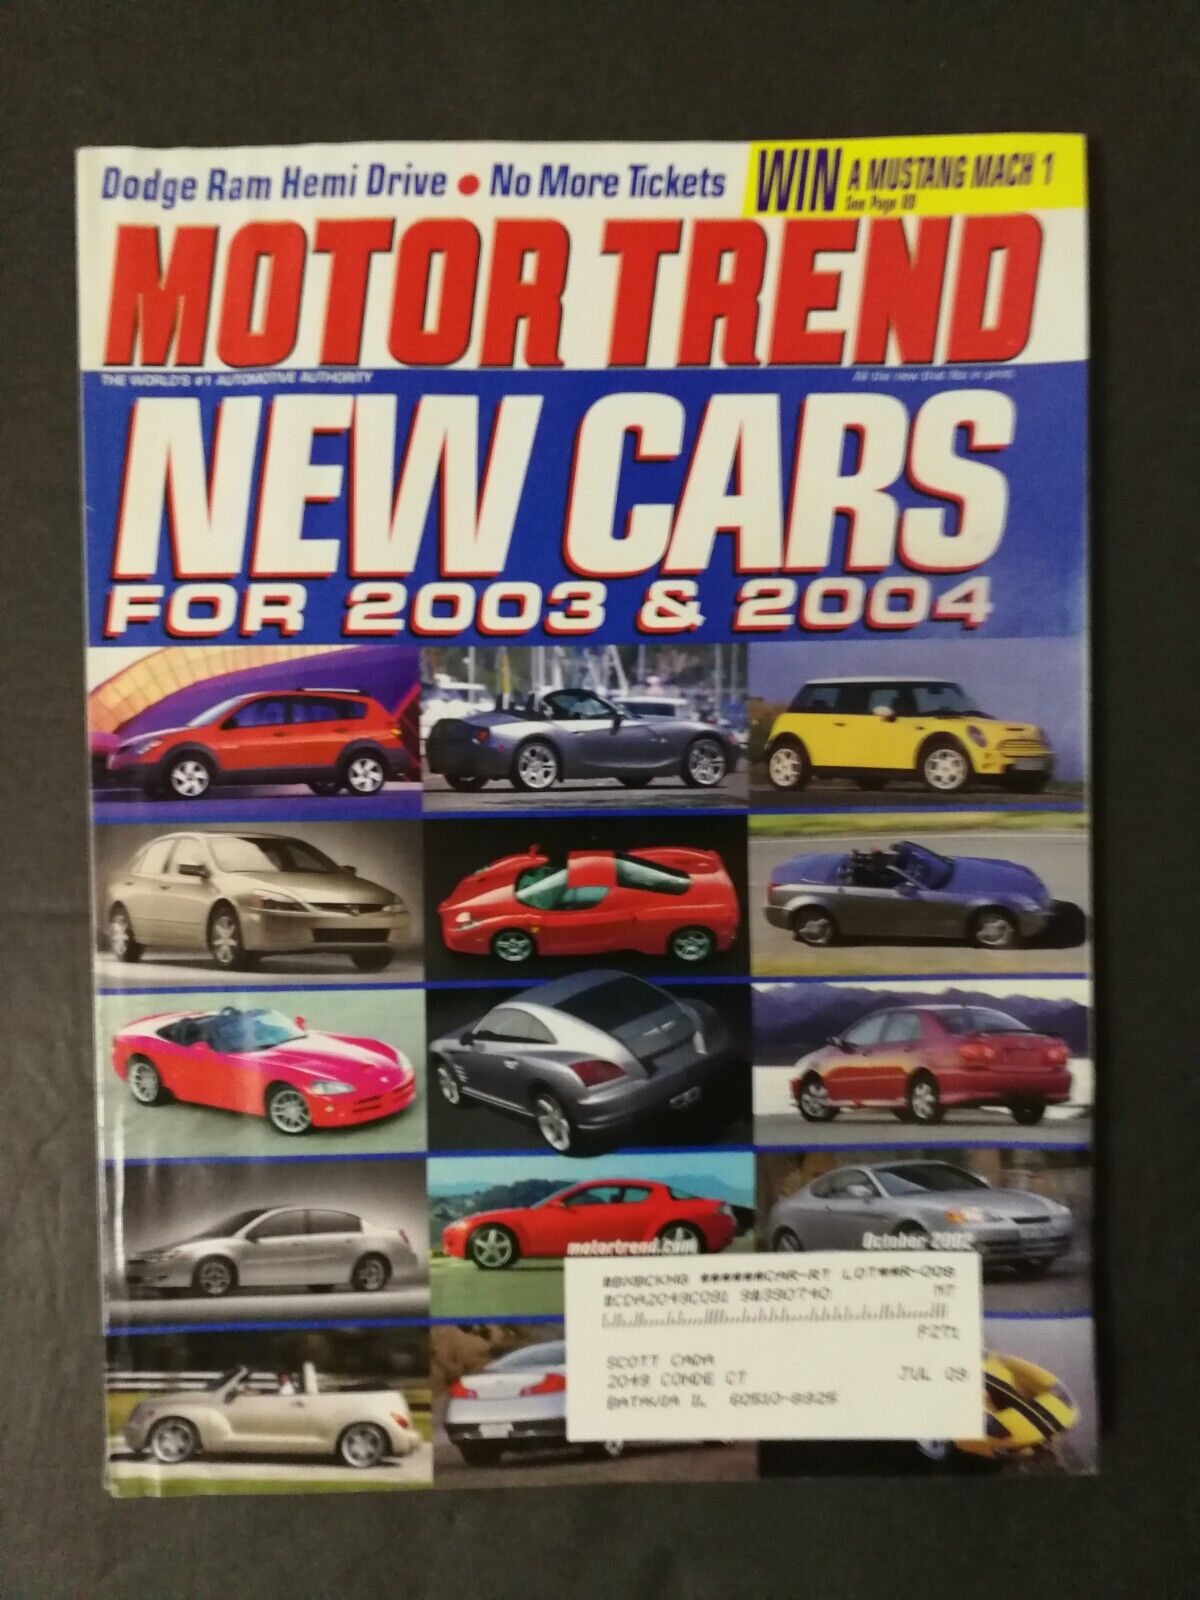 Motor Trend Magazine October 2002 New Cars for 2003 & 2004 - Dodge Ram Hemi 223